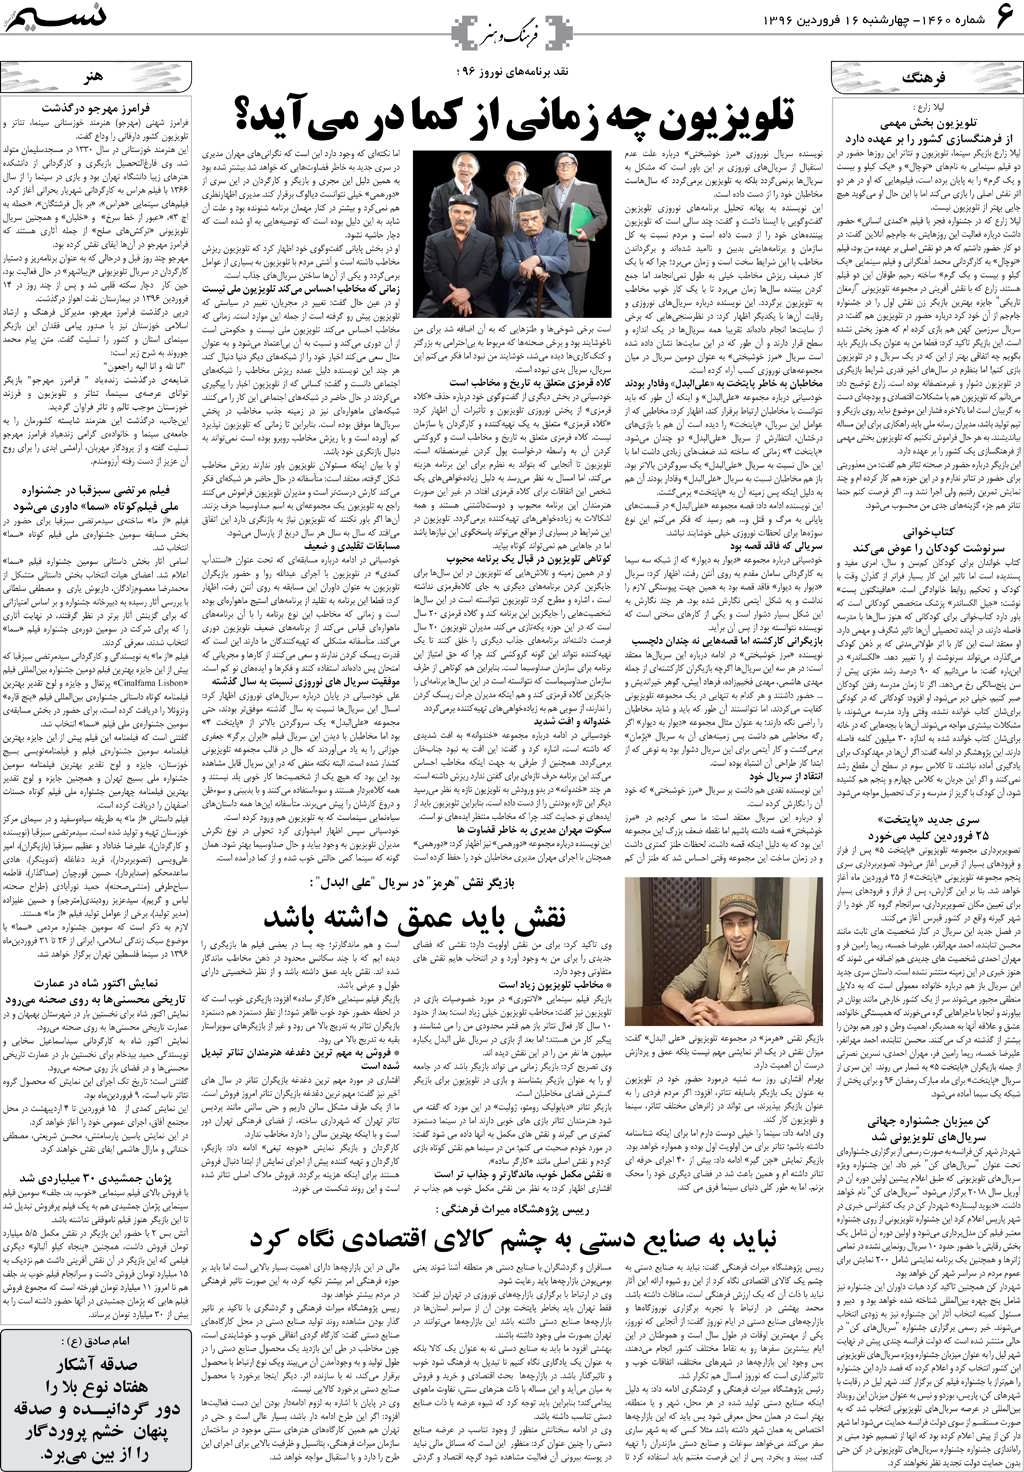 صفحه فرهنگ و هنر روزنامه نسیم شماره 1460